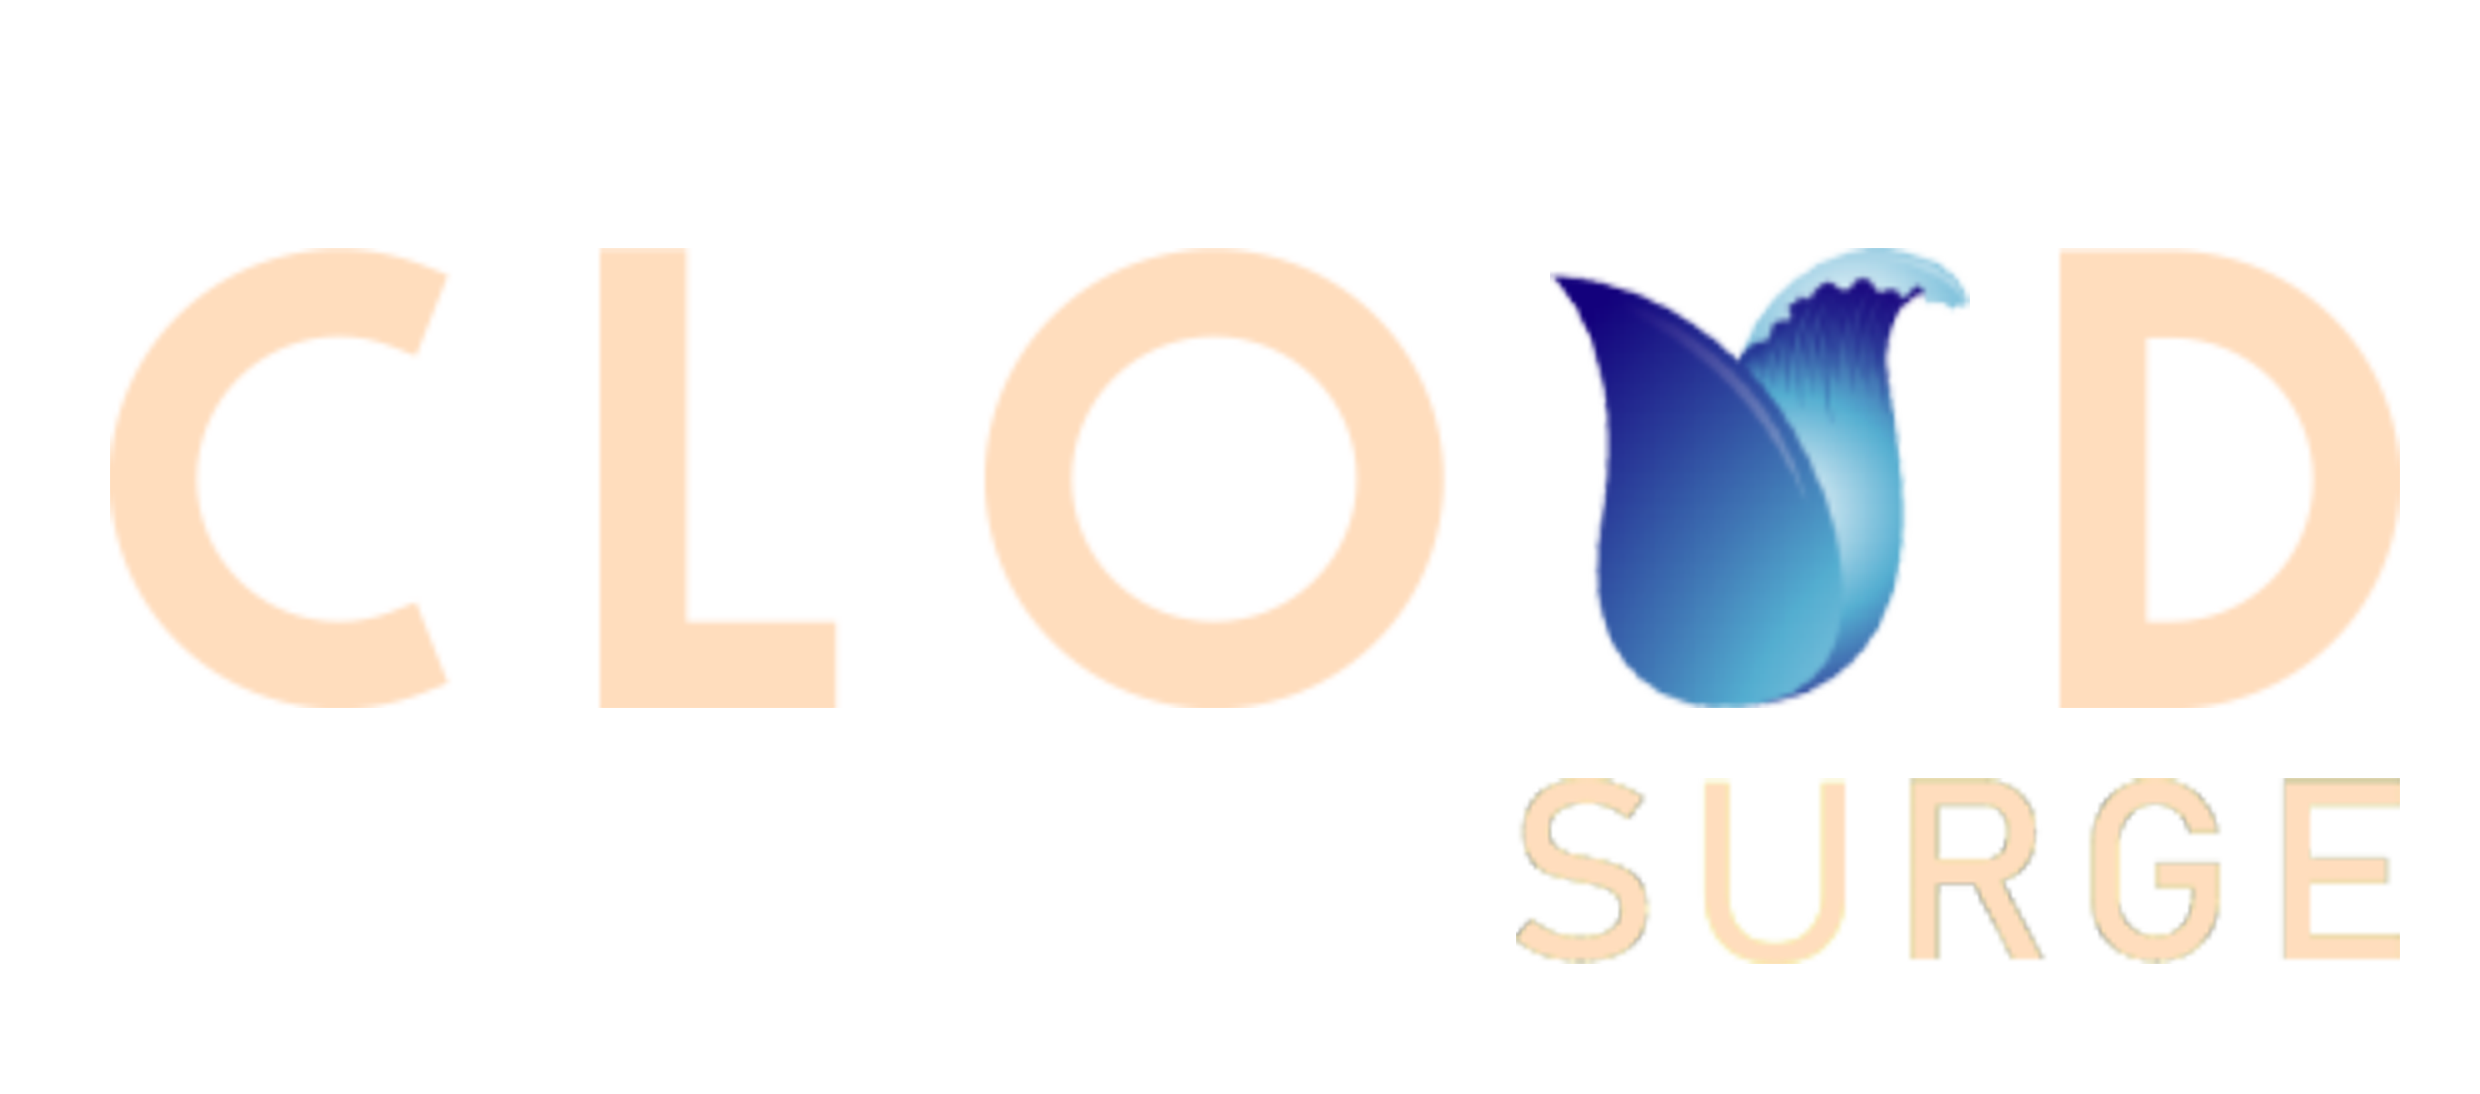 Cloud Surge Logo